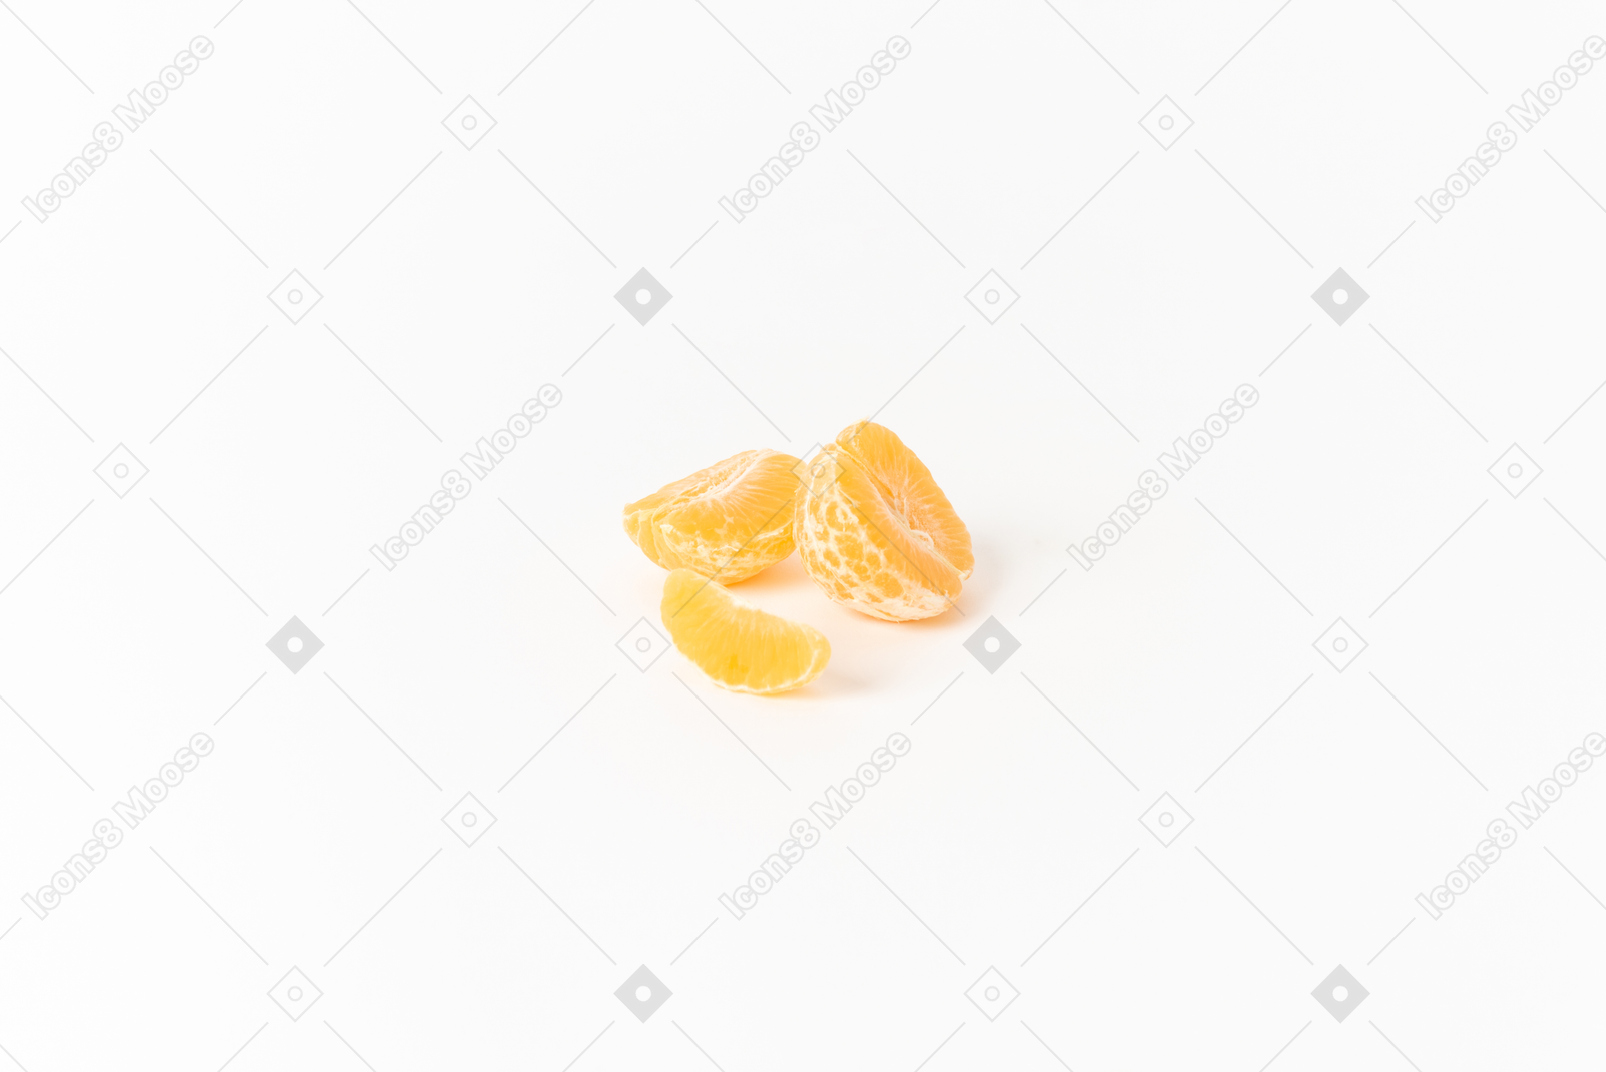 Mandarin oranges have a gentle sweet taste